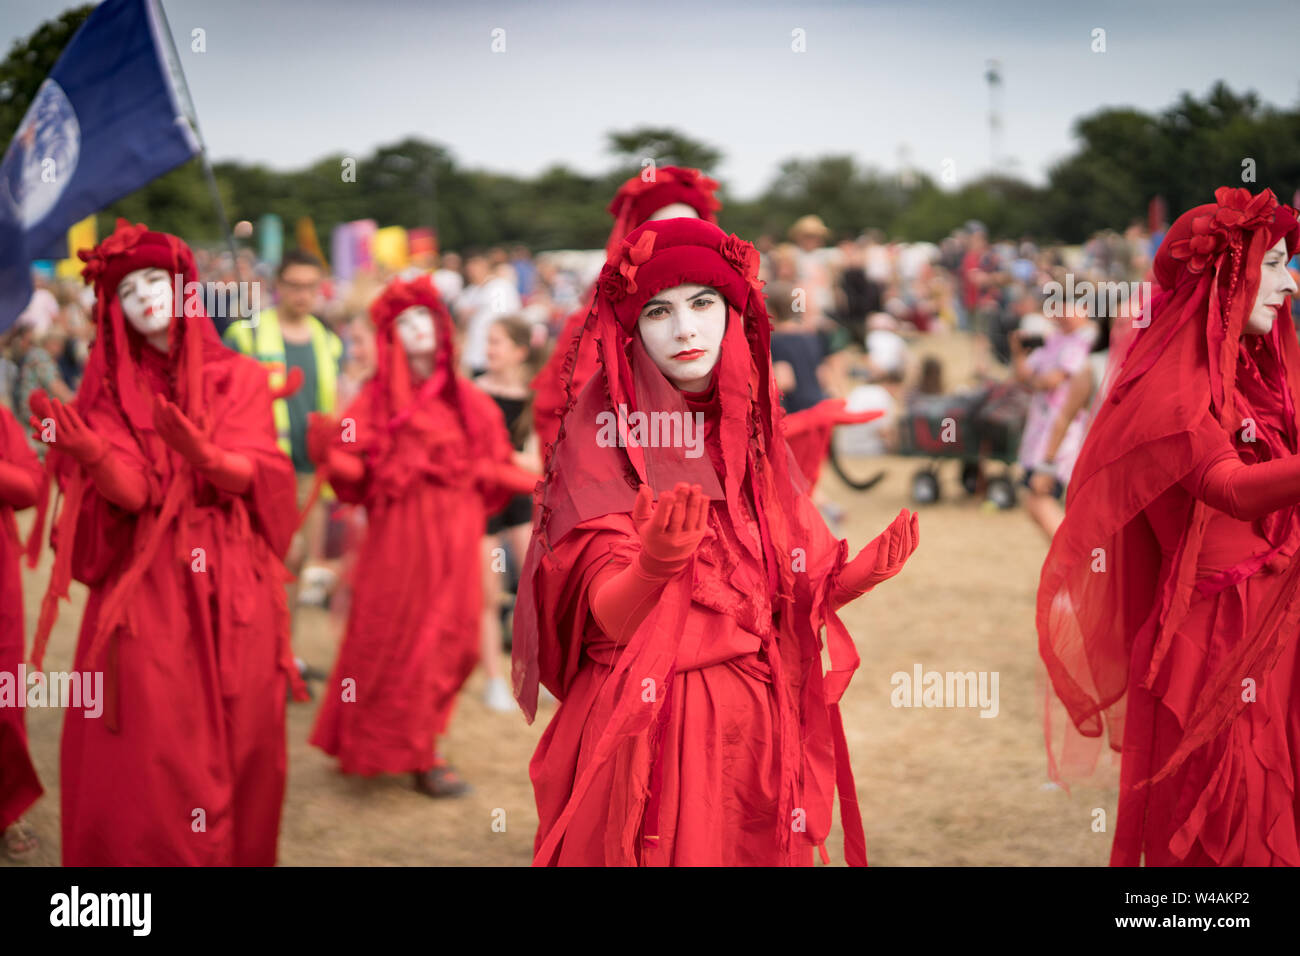 Suffolk, UK. Dimanche, 21 juillet, 2019. L'Extinction La Brigade rouge rébellion au jour 3 de la Latitude 2019 Festival. Photo : Roger Garfield/Alamy Live News Banque D'Images